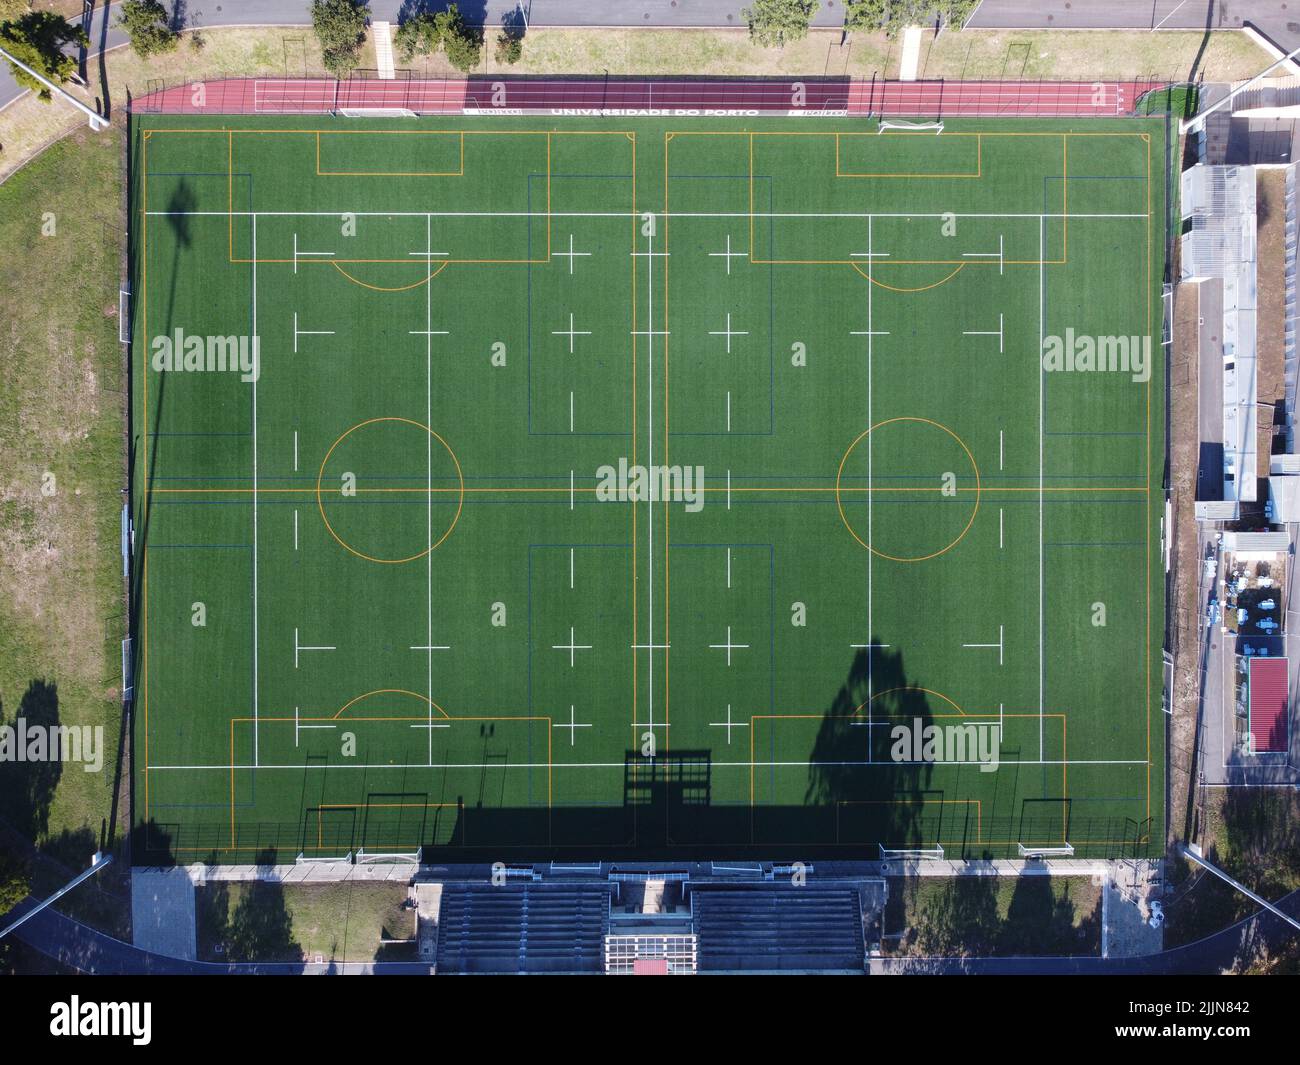 Ein Blick aus der Vogelperspektive auf das Fußballstadion der Universität. Portugal Stockfoto